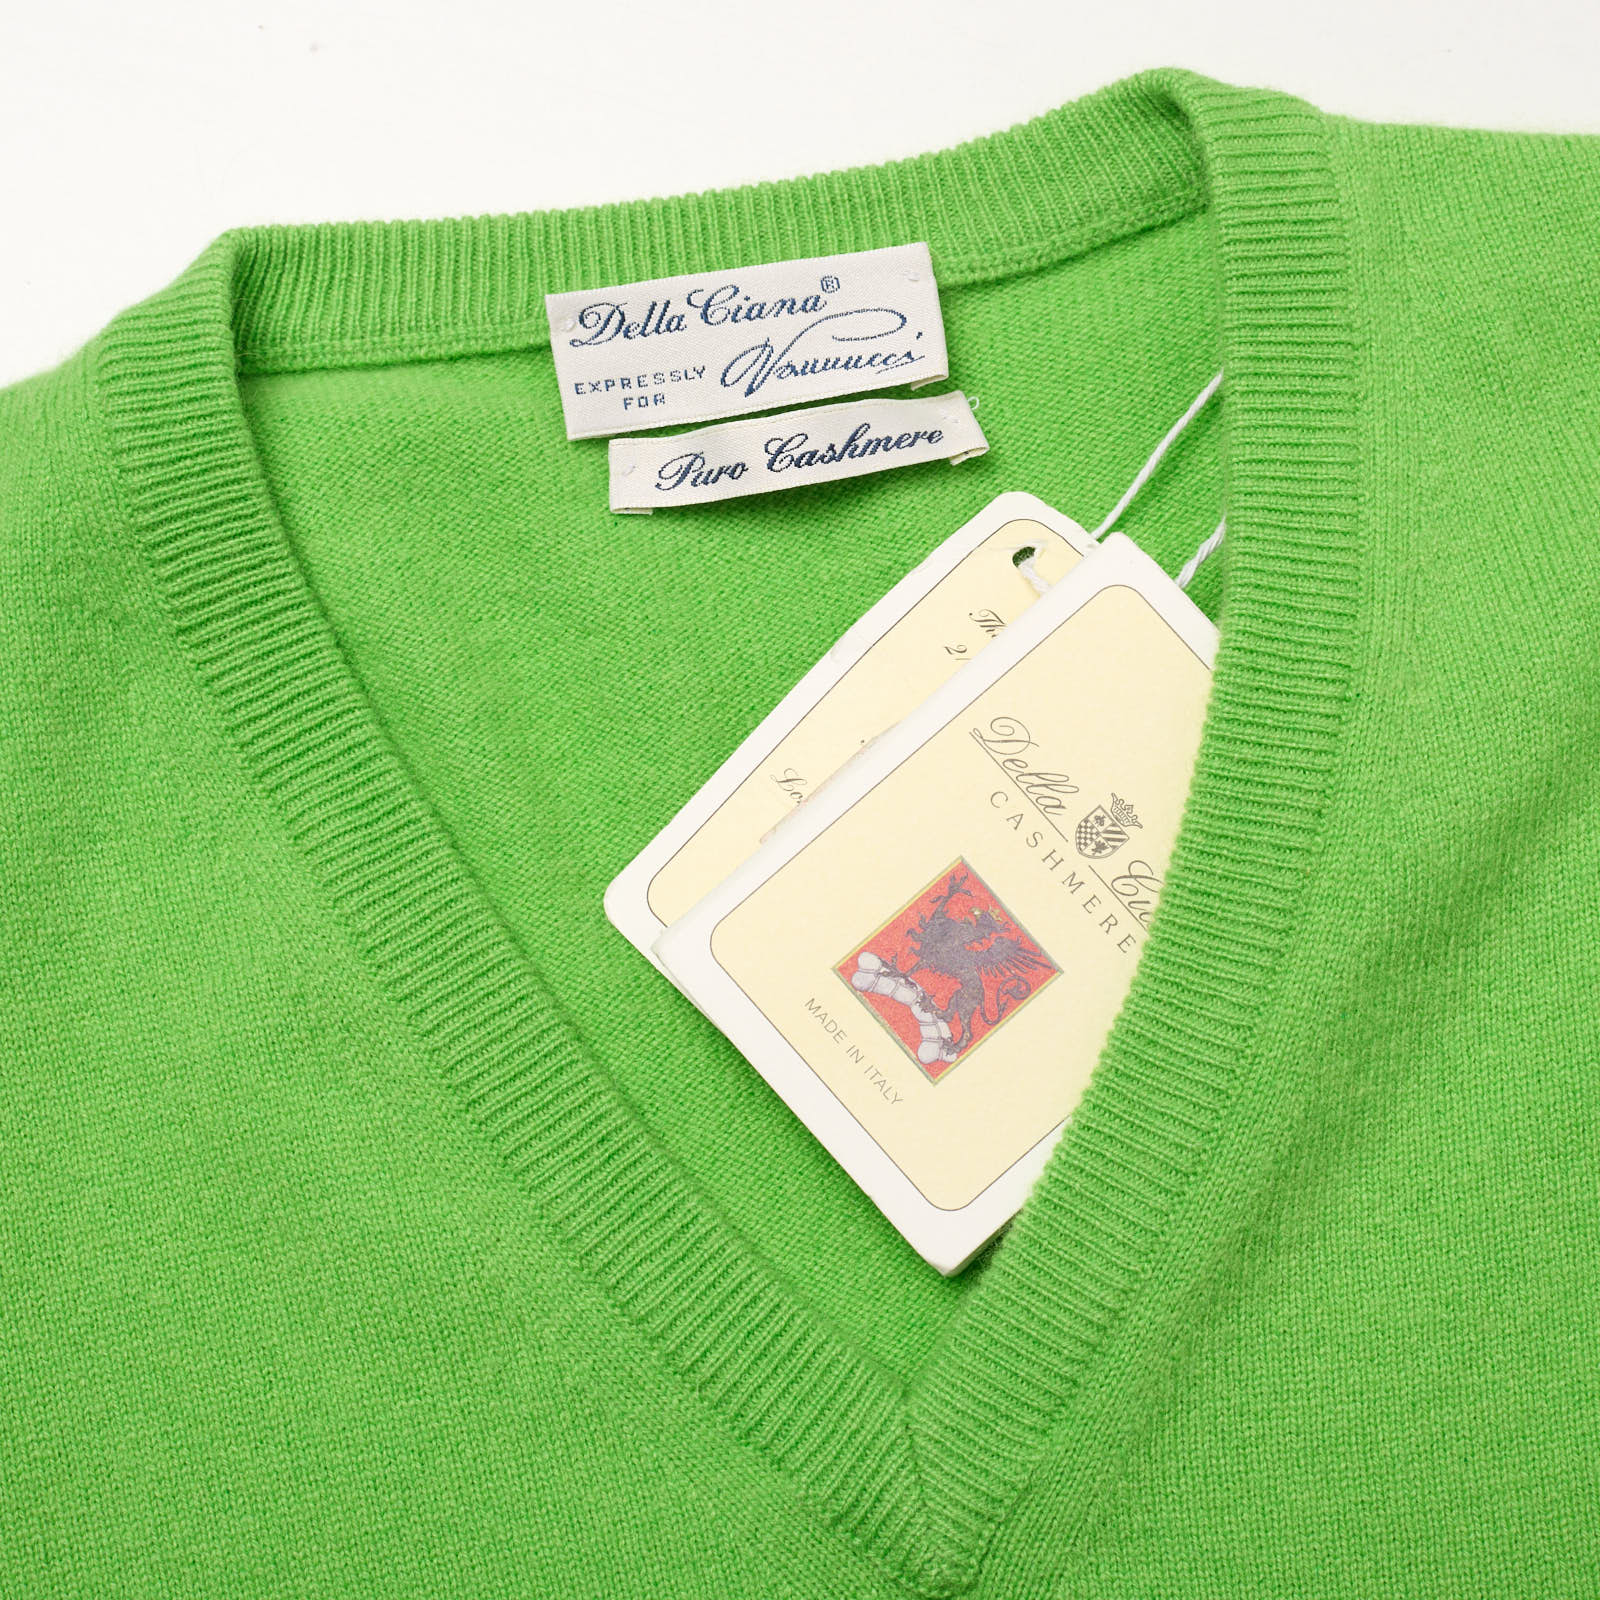 DELLA CIANA for VANNUCCI Green Cashmere Knit Sweater Vest EU 50 NEW US M